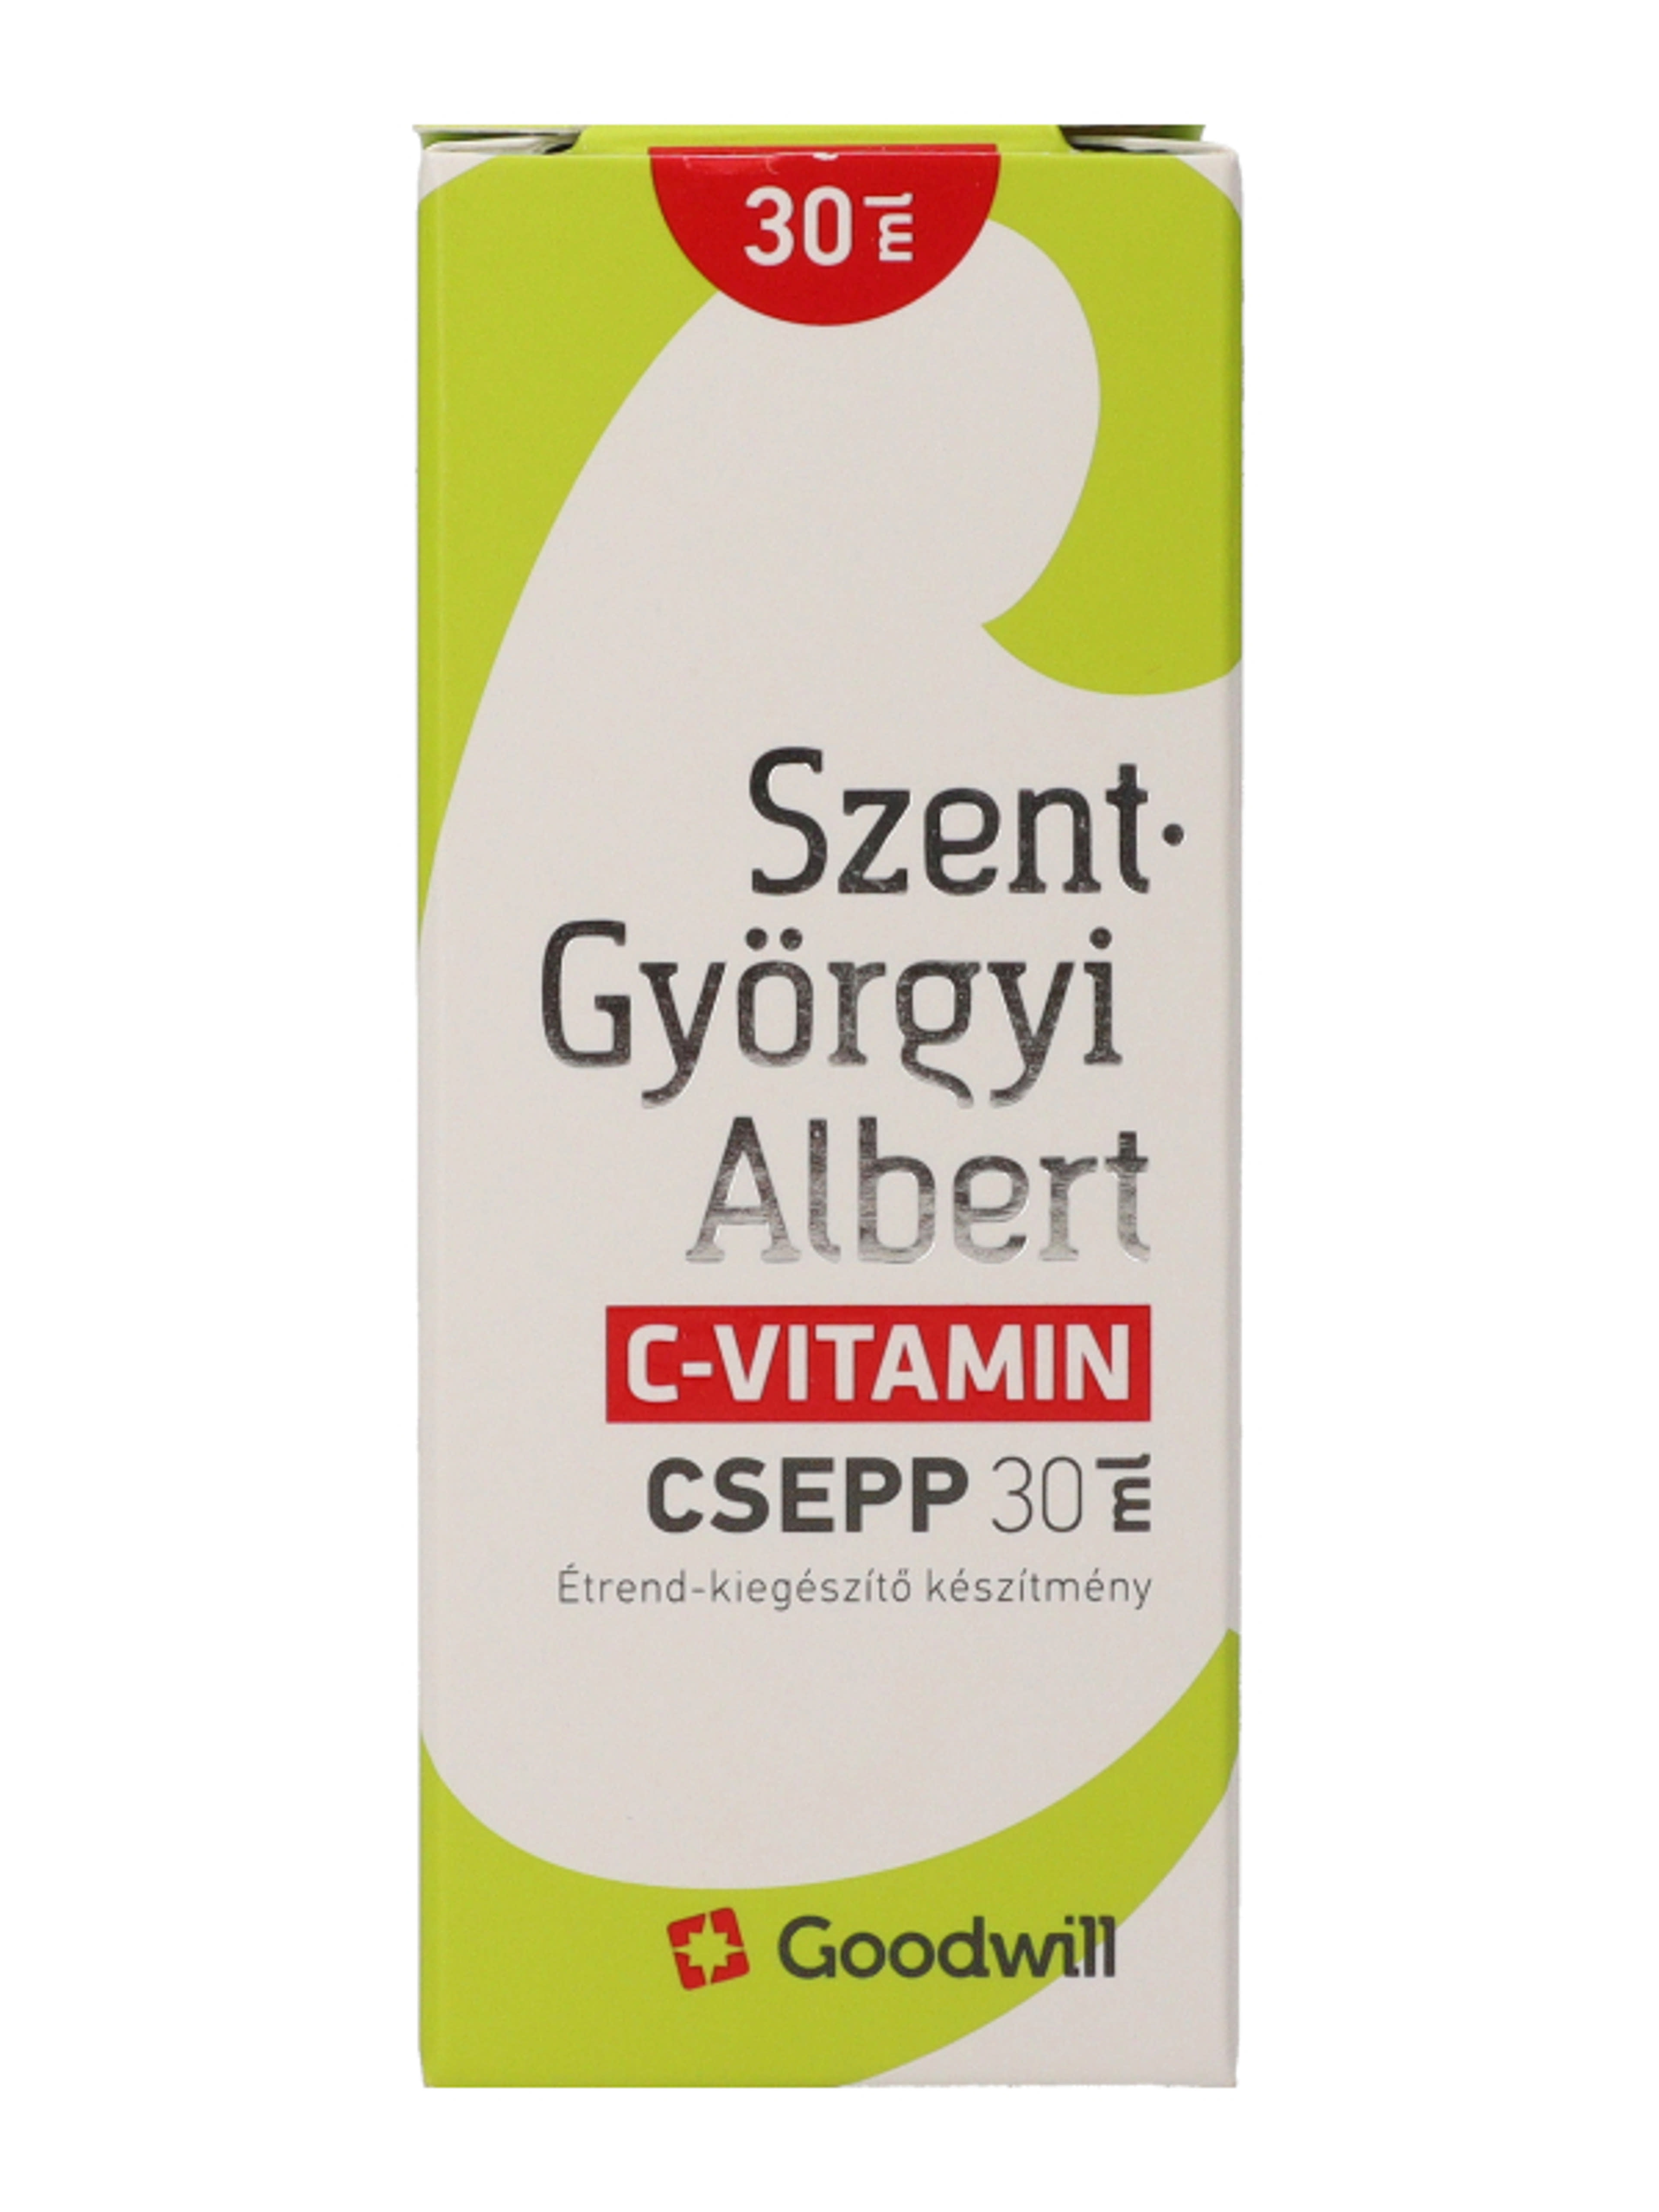 Szent- Györgyi Albert C-Vitamin csepp - 30 ml-1